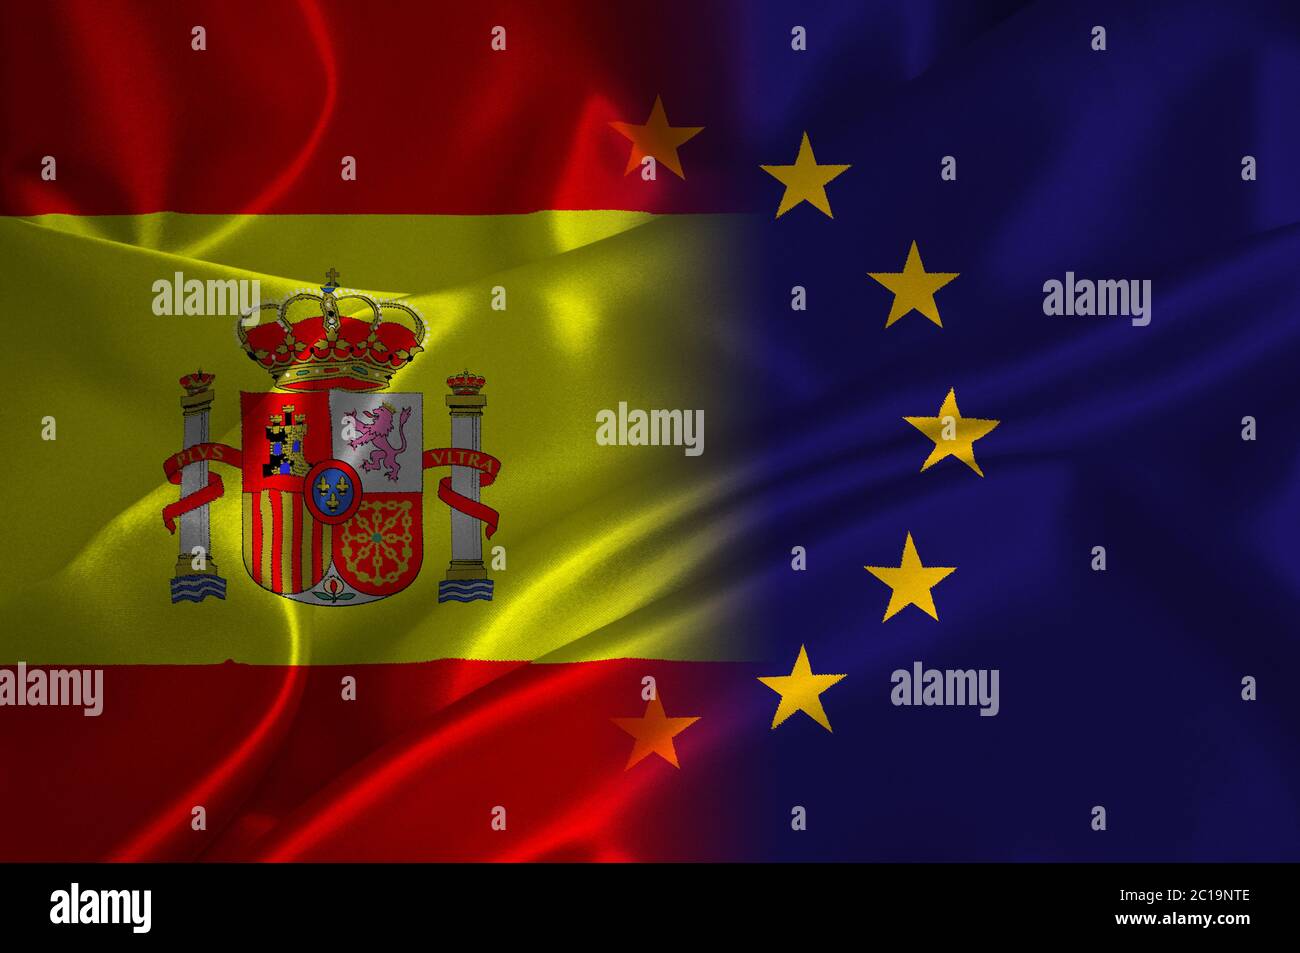 EU flag and Spain flag on satin texture Stock Photo